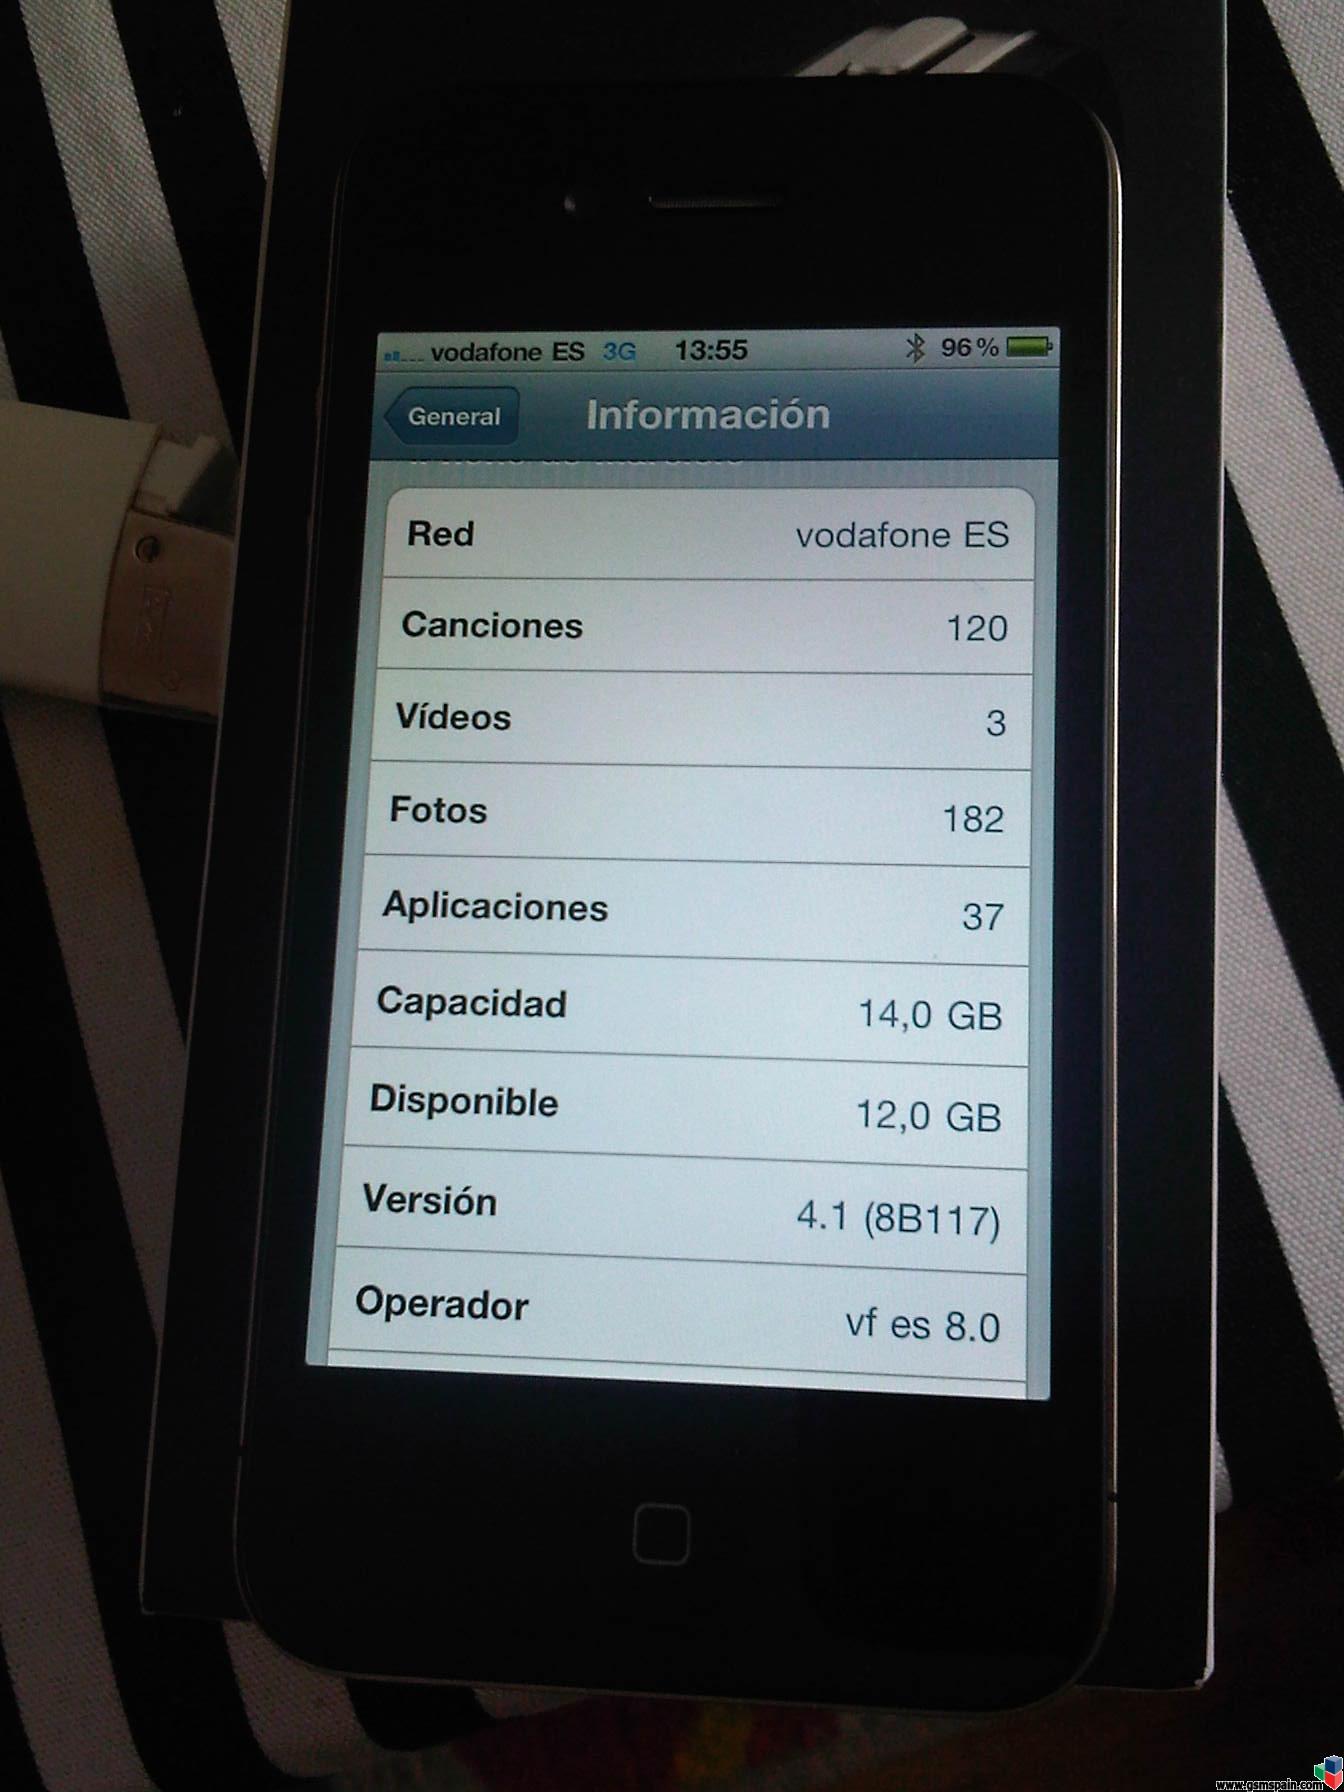 Vendo Iphone 4 16Gb Vodafone 4.1 + Extras - 430 G.I.